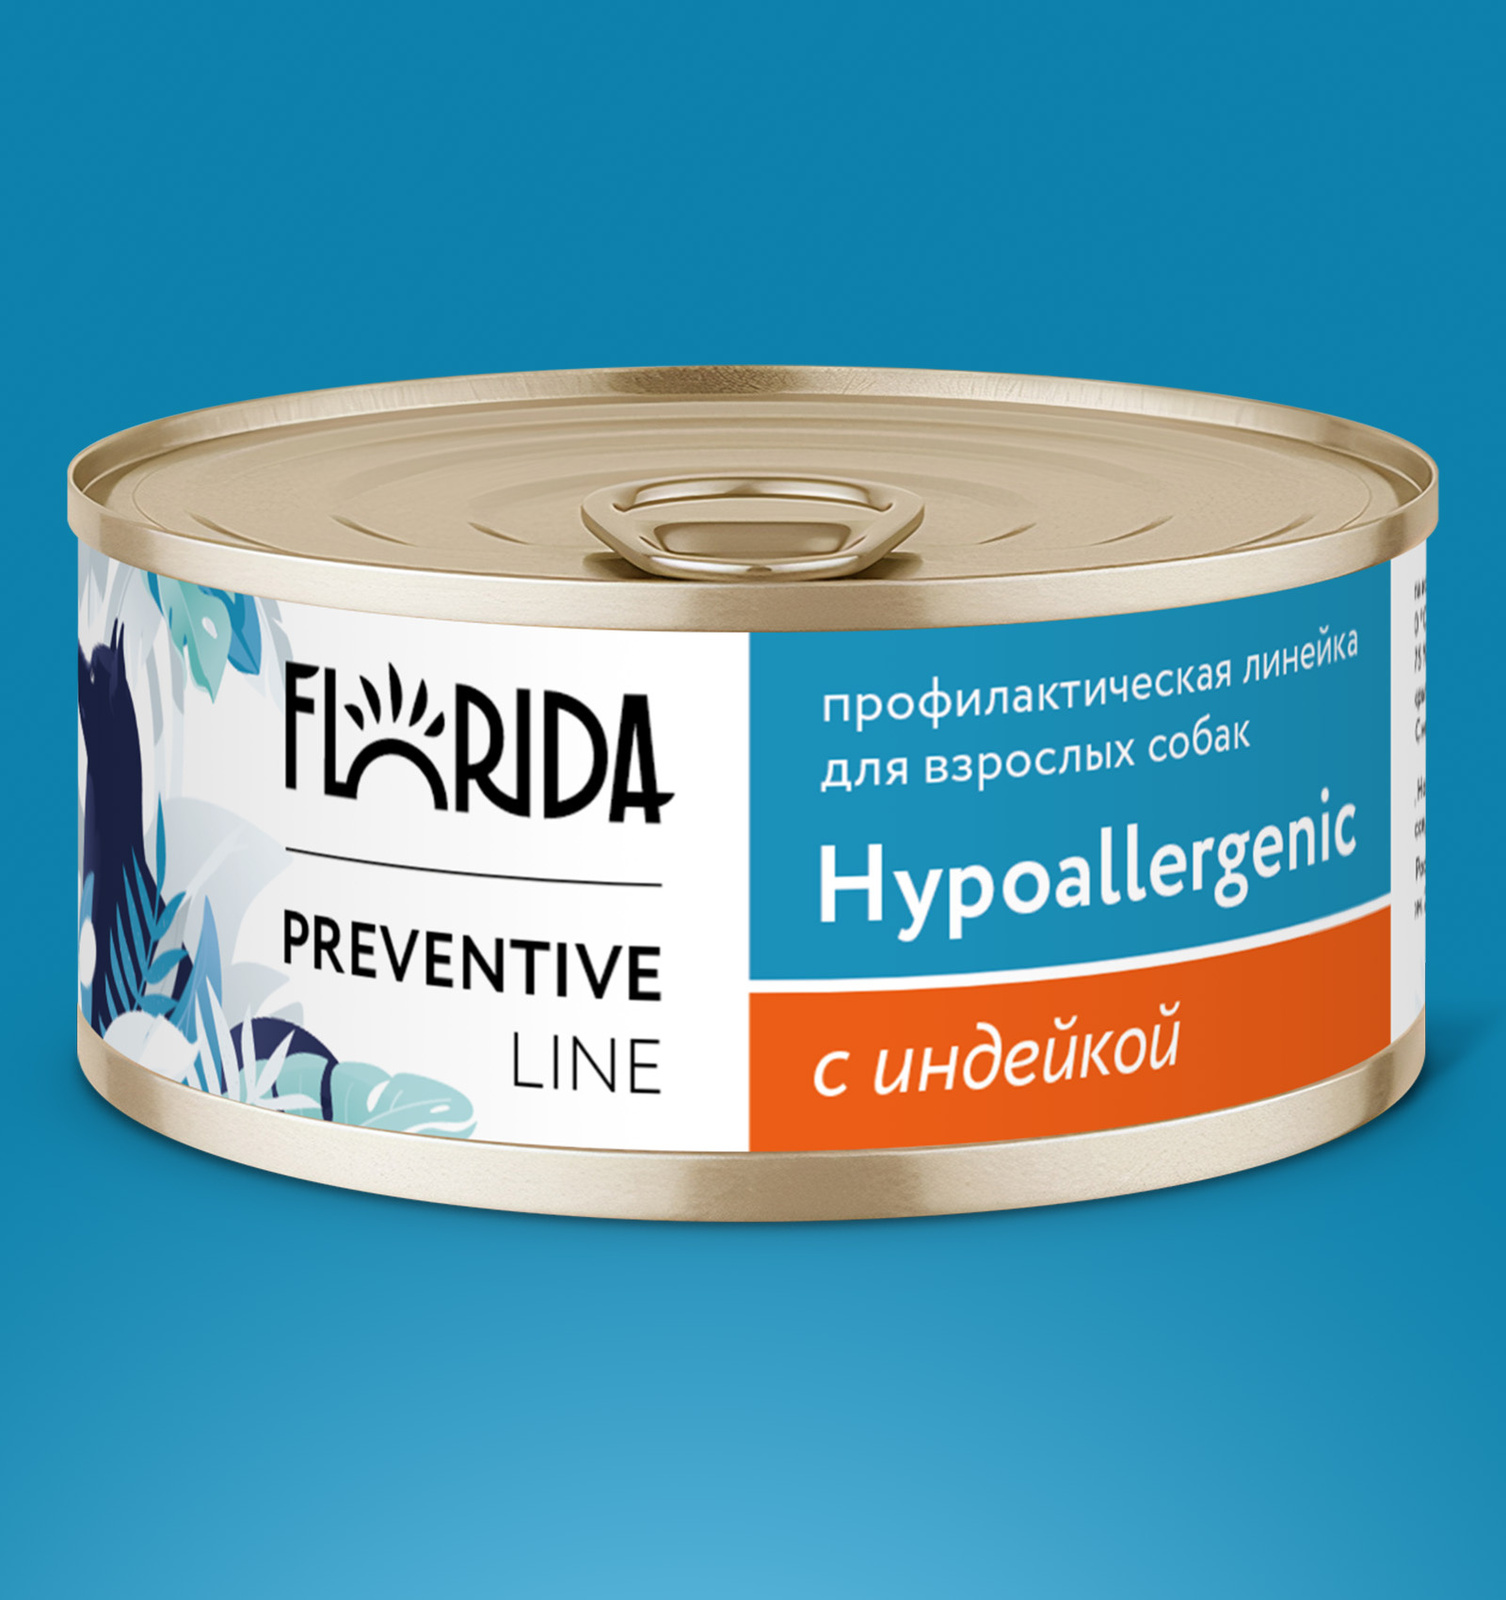 Florida Preventive Line консервы Florida Preventive Line консервы hypoallergenic для собак Гипоаллергенные с индейкой (100 г)